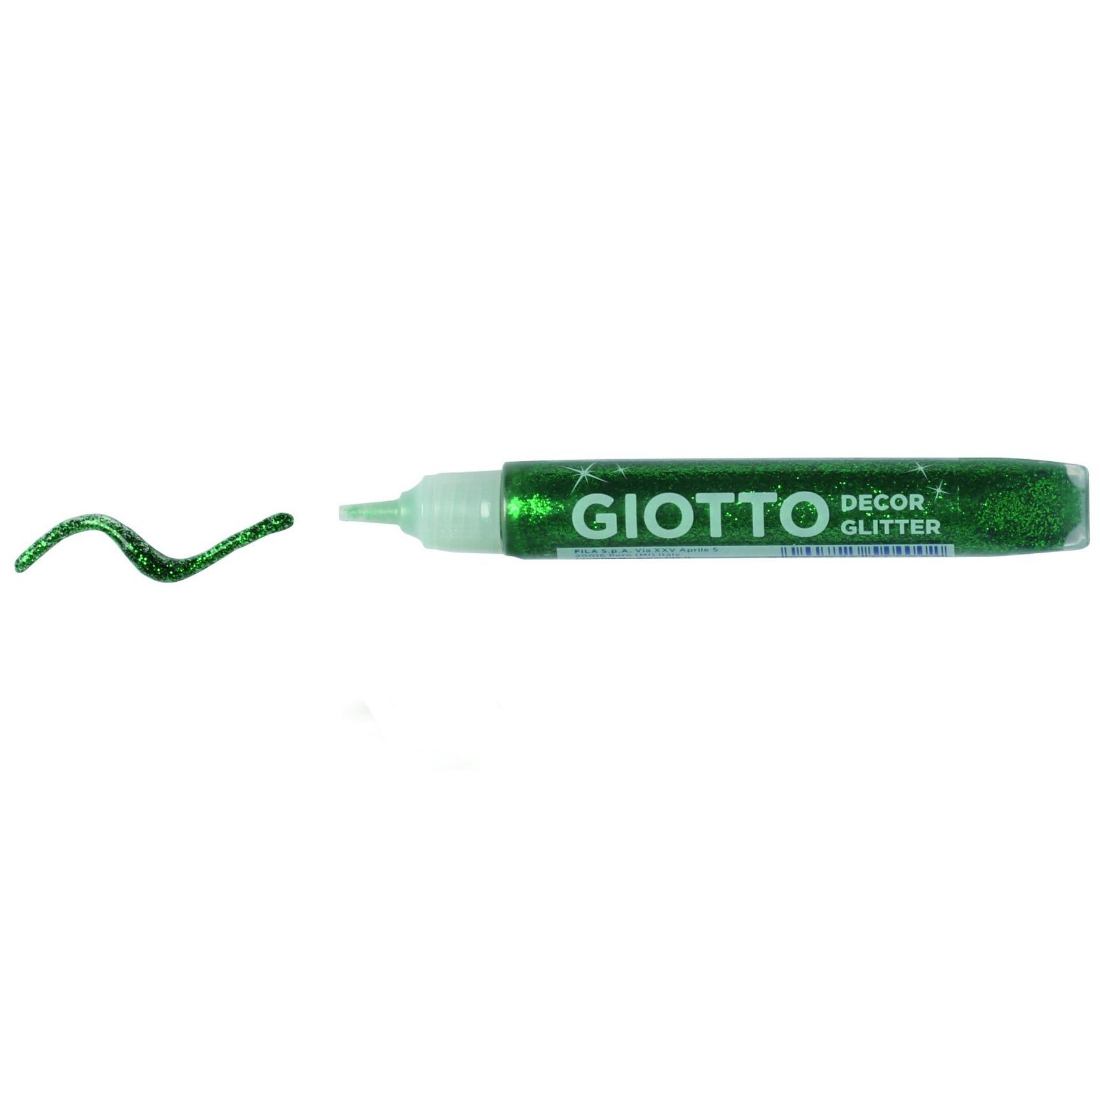 Cola Decor Glitter Strass Giotto